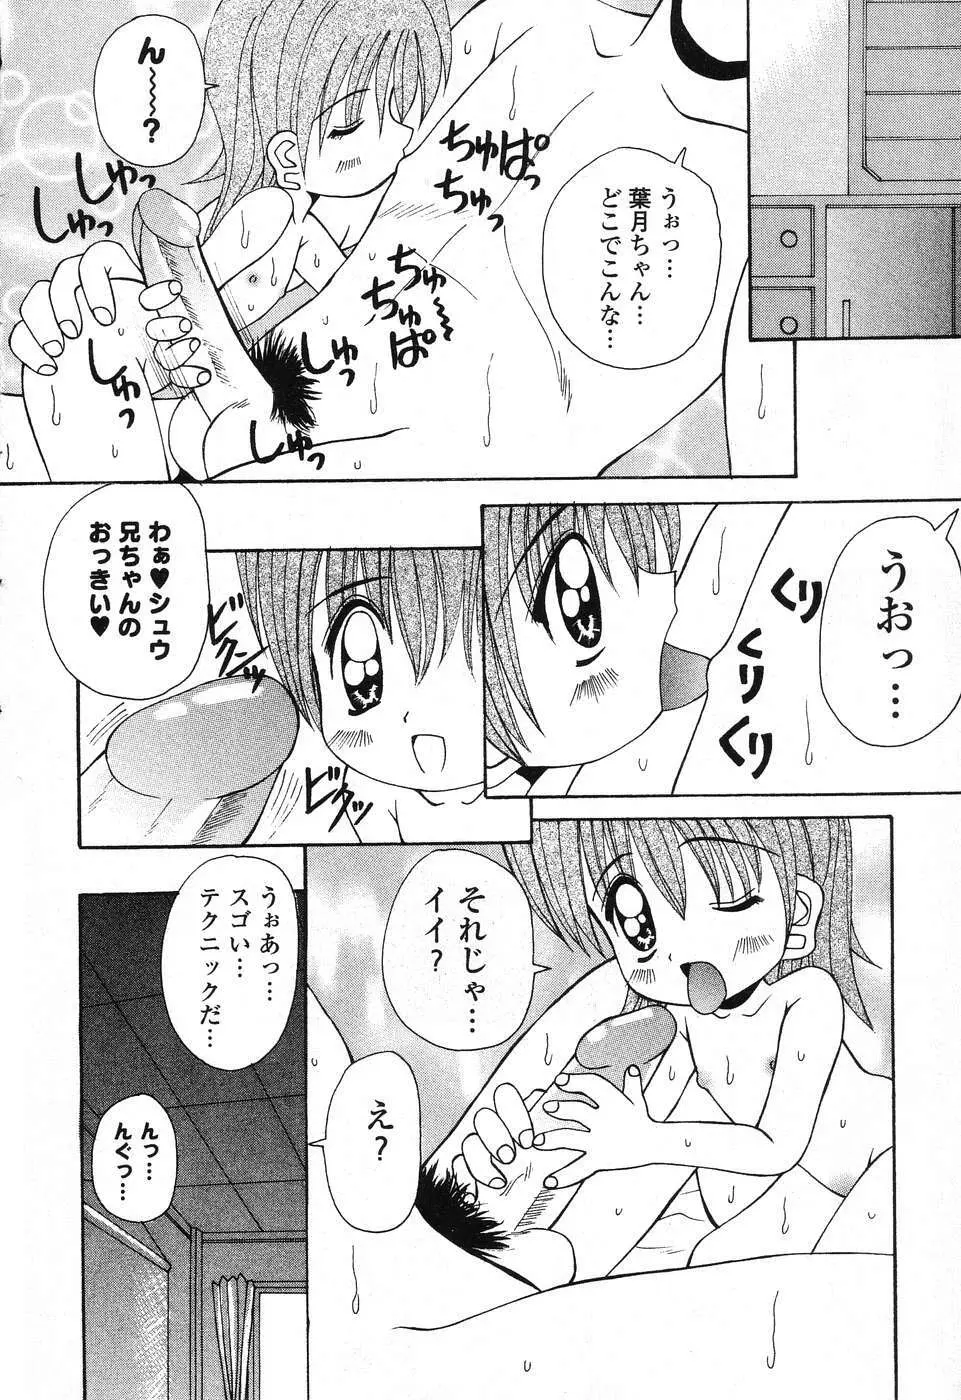 ぴゅあぷちっと Vol. 25 21ページ